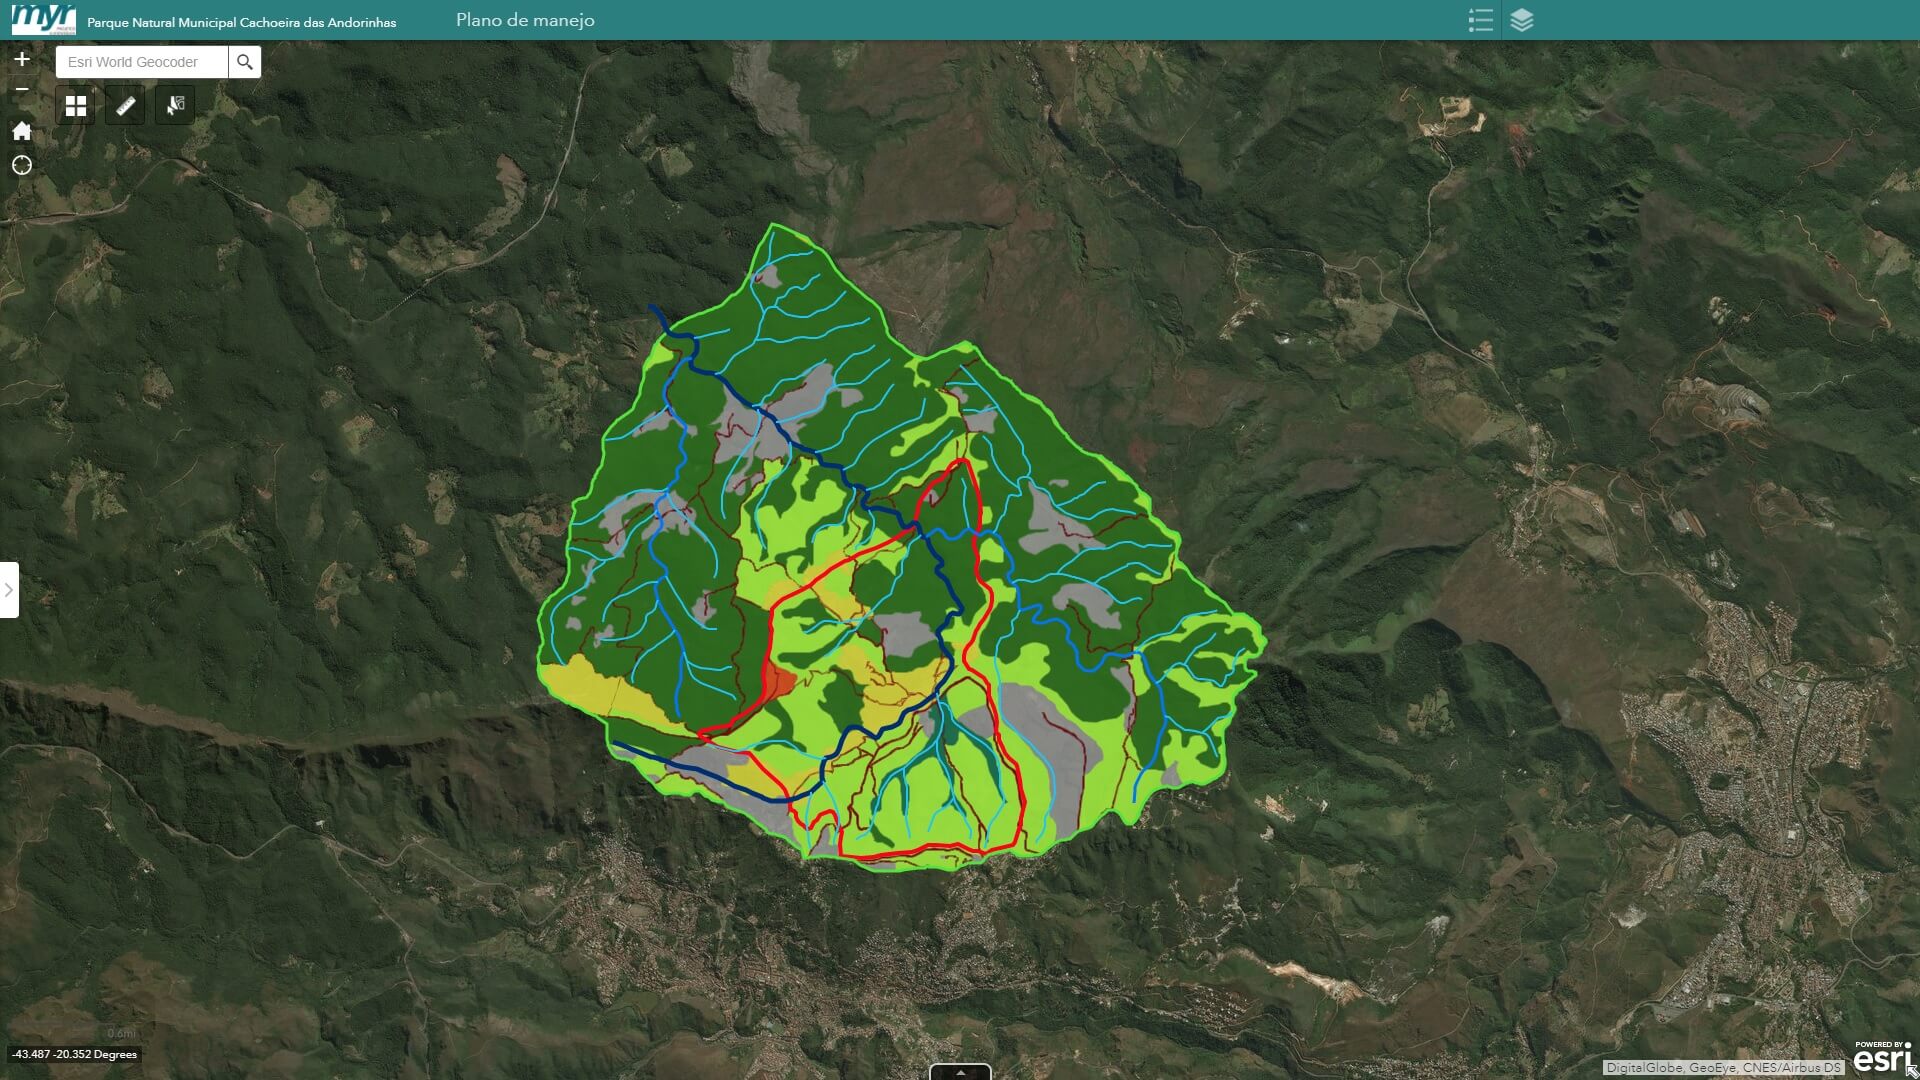 Foto da plataforma ArcGis usada para disponibilizar os dados do Plano de Manejo do Parque Natural Municipal das Andorinhas.